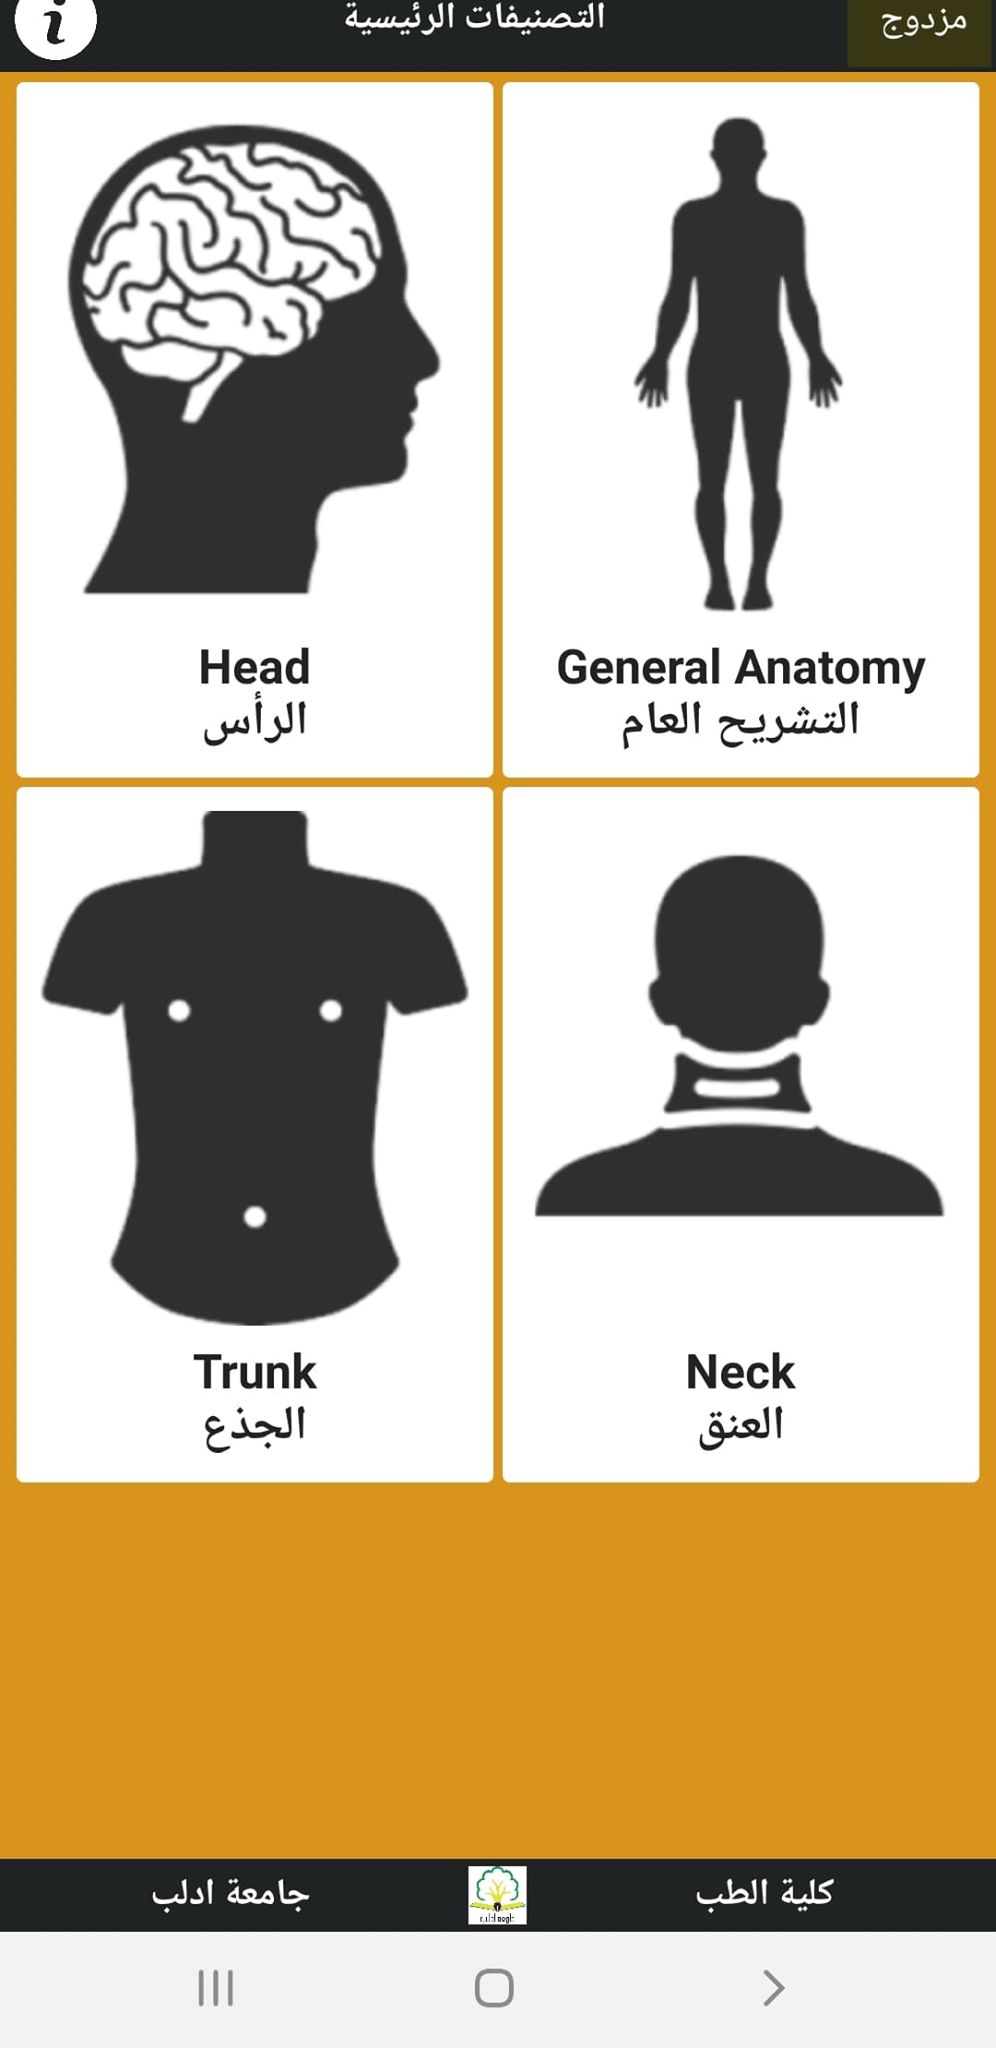 الصفحة الرئيسية لتطبيق التشريح بالعربي